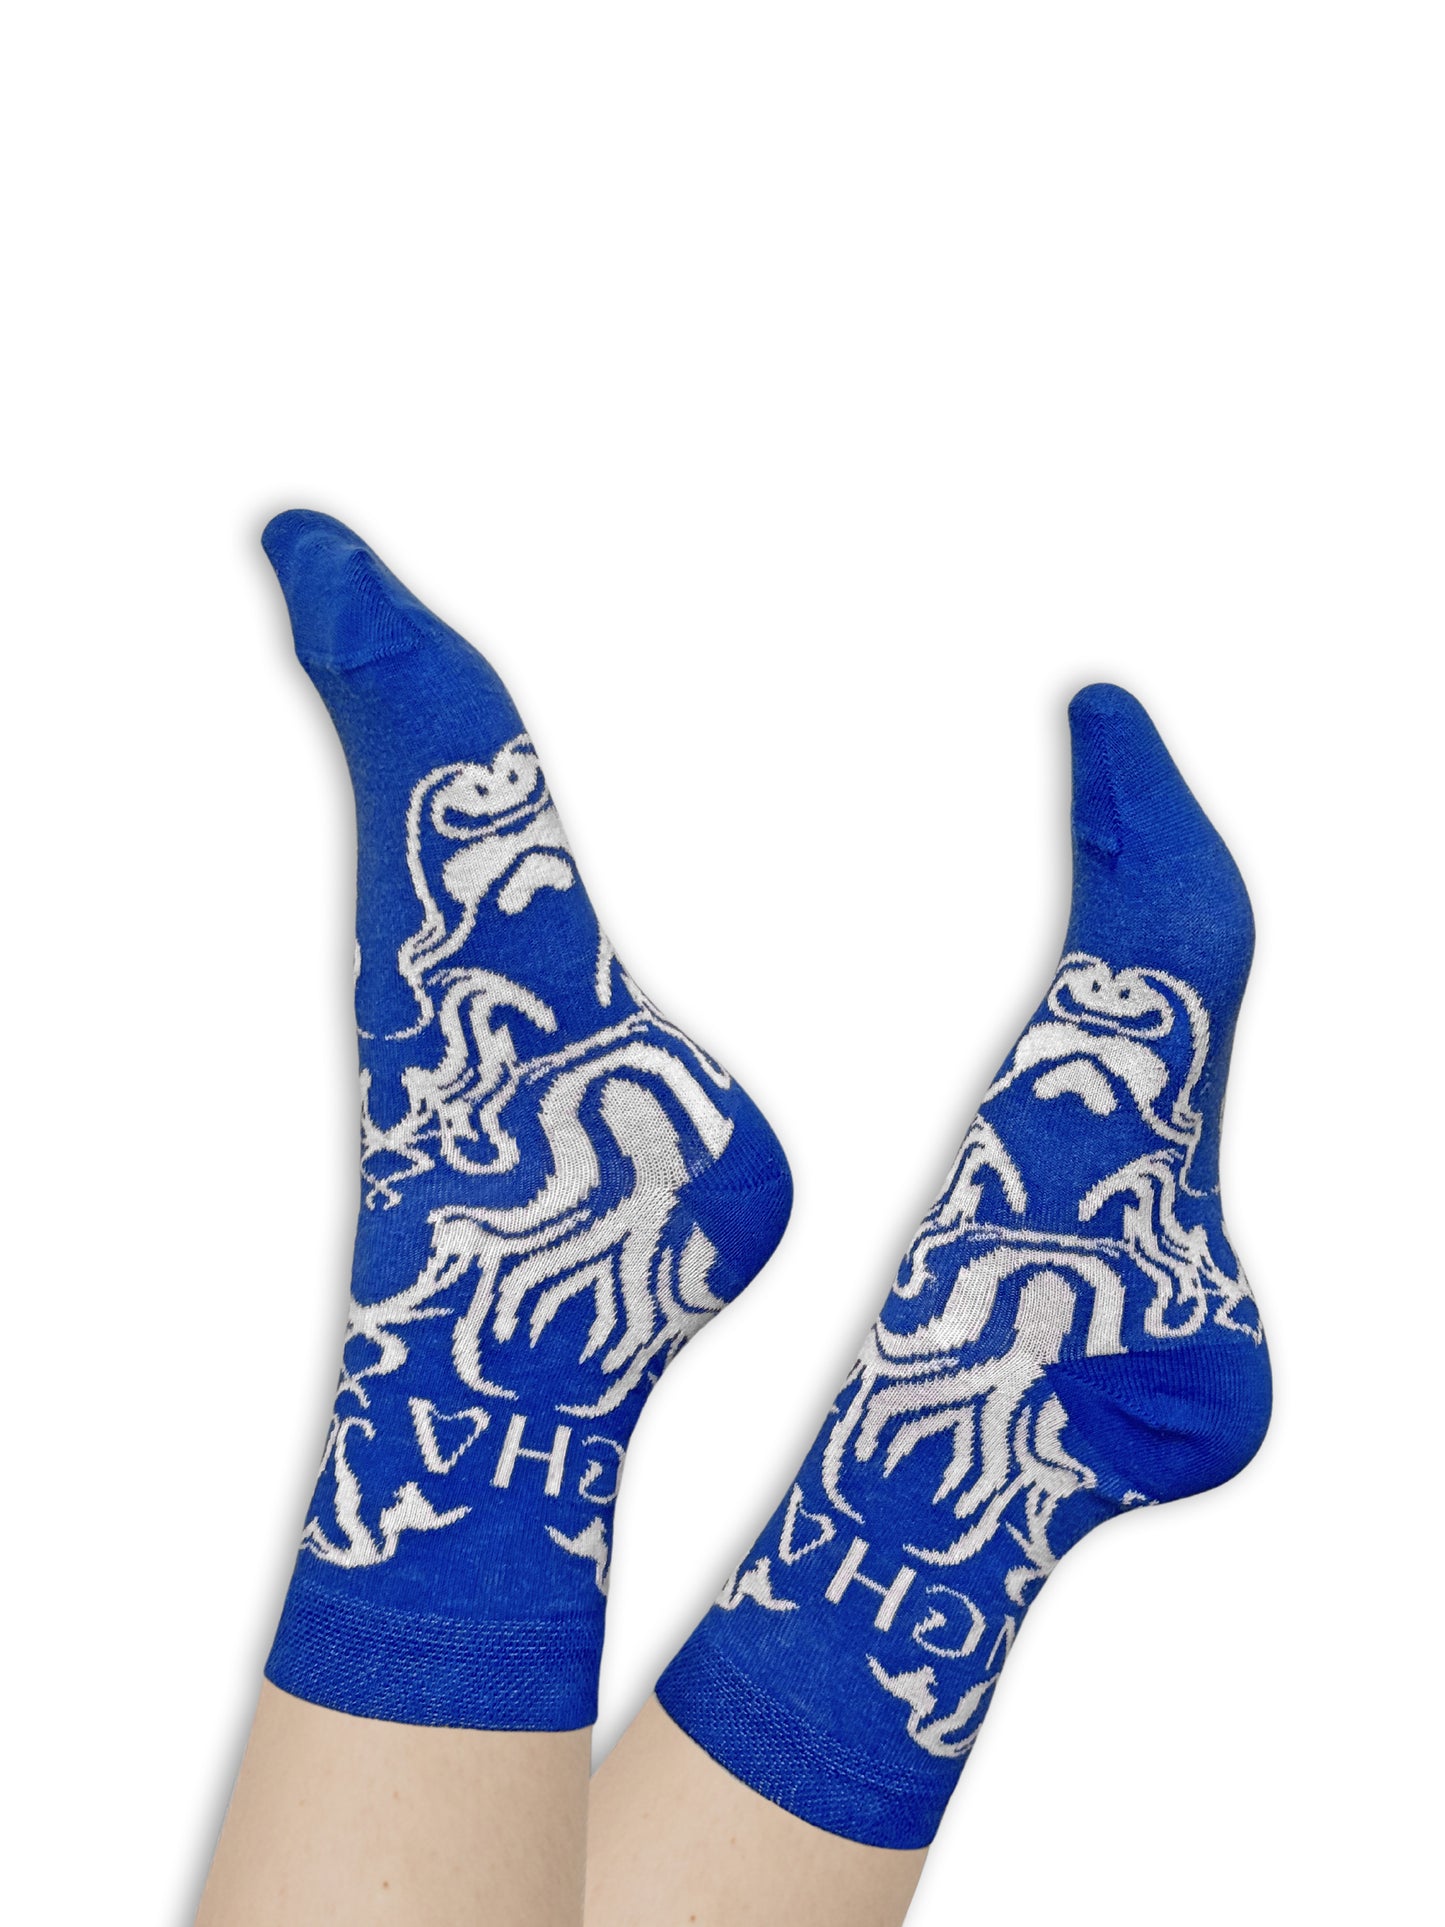 Charapé // blue-white socks